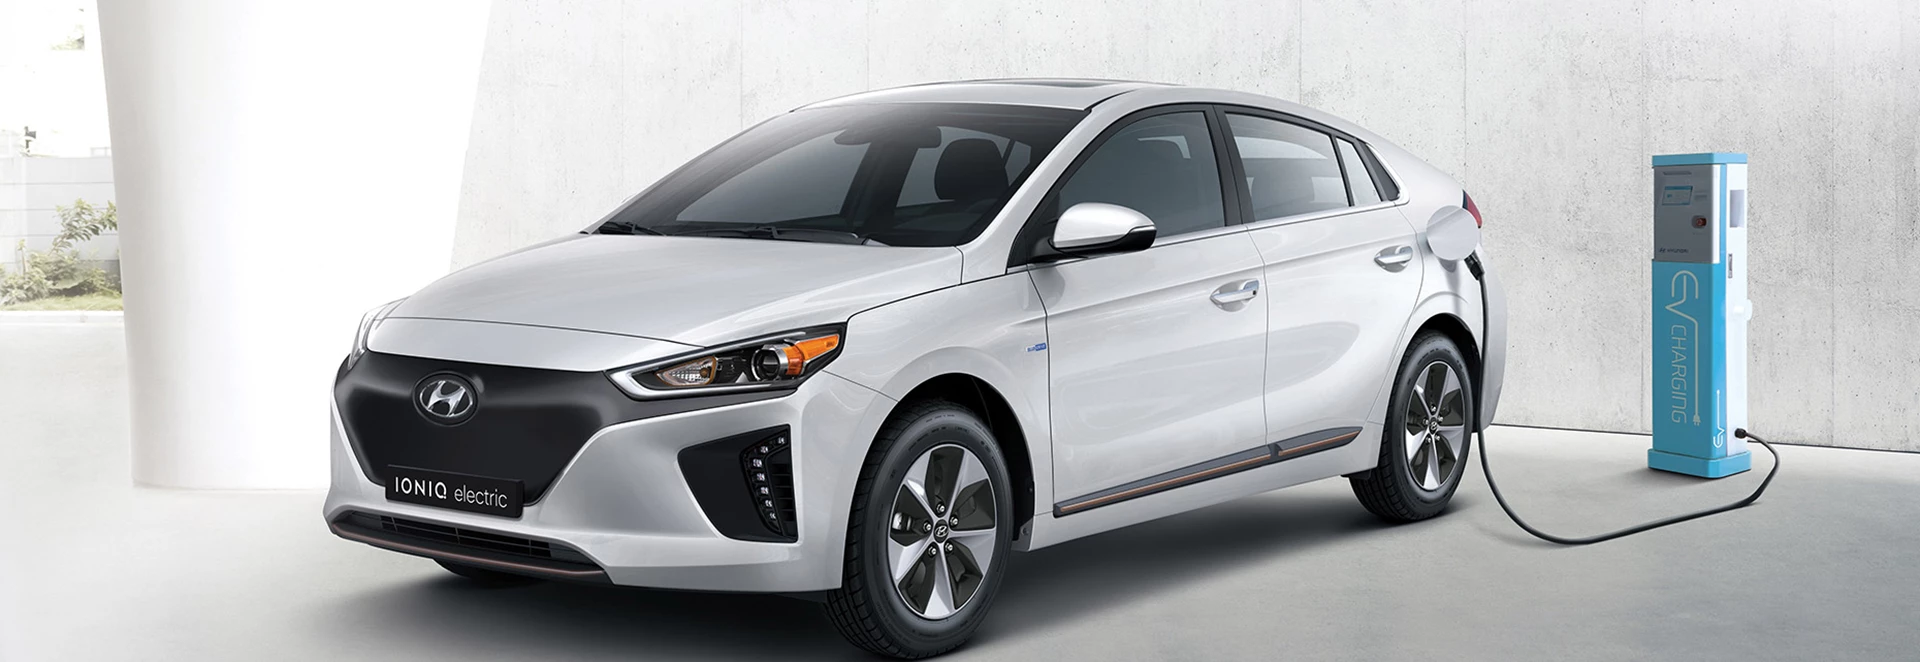 Hyundai Ioniq: Full pricing and specs unveiled